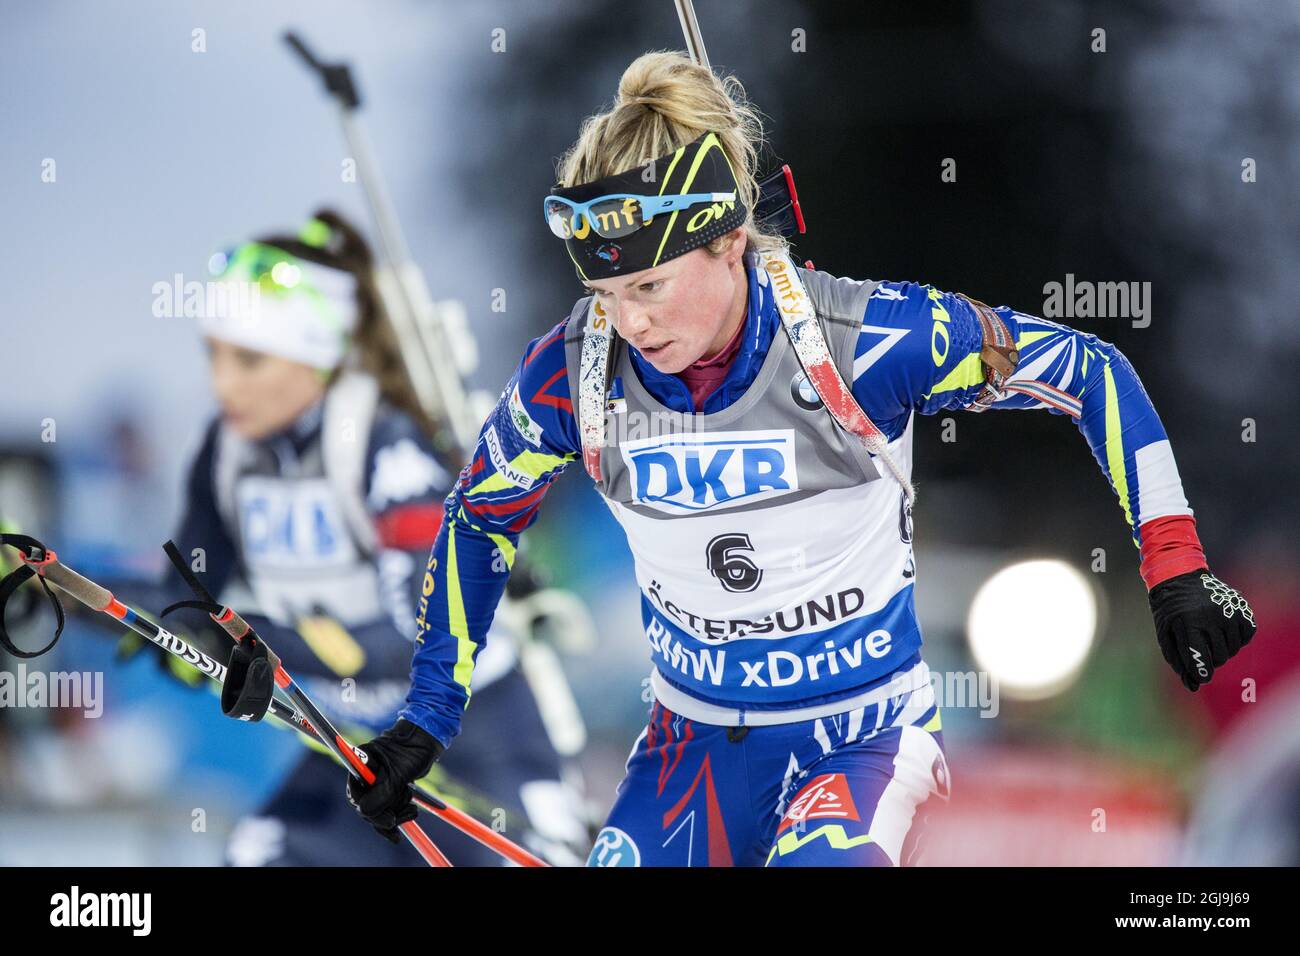 Marie Dorin Hbert di Francia in azione durante la gara femminile di inseguimento di 10 km alla IBU Biathlon World Cup di Ostersund, Svezia, il 6 dicembre 2015. Foto: Christine Olsson / TT / code 10430 Foto Stock